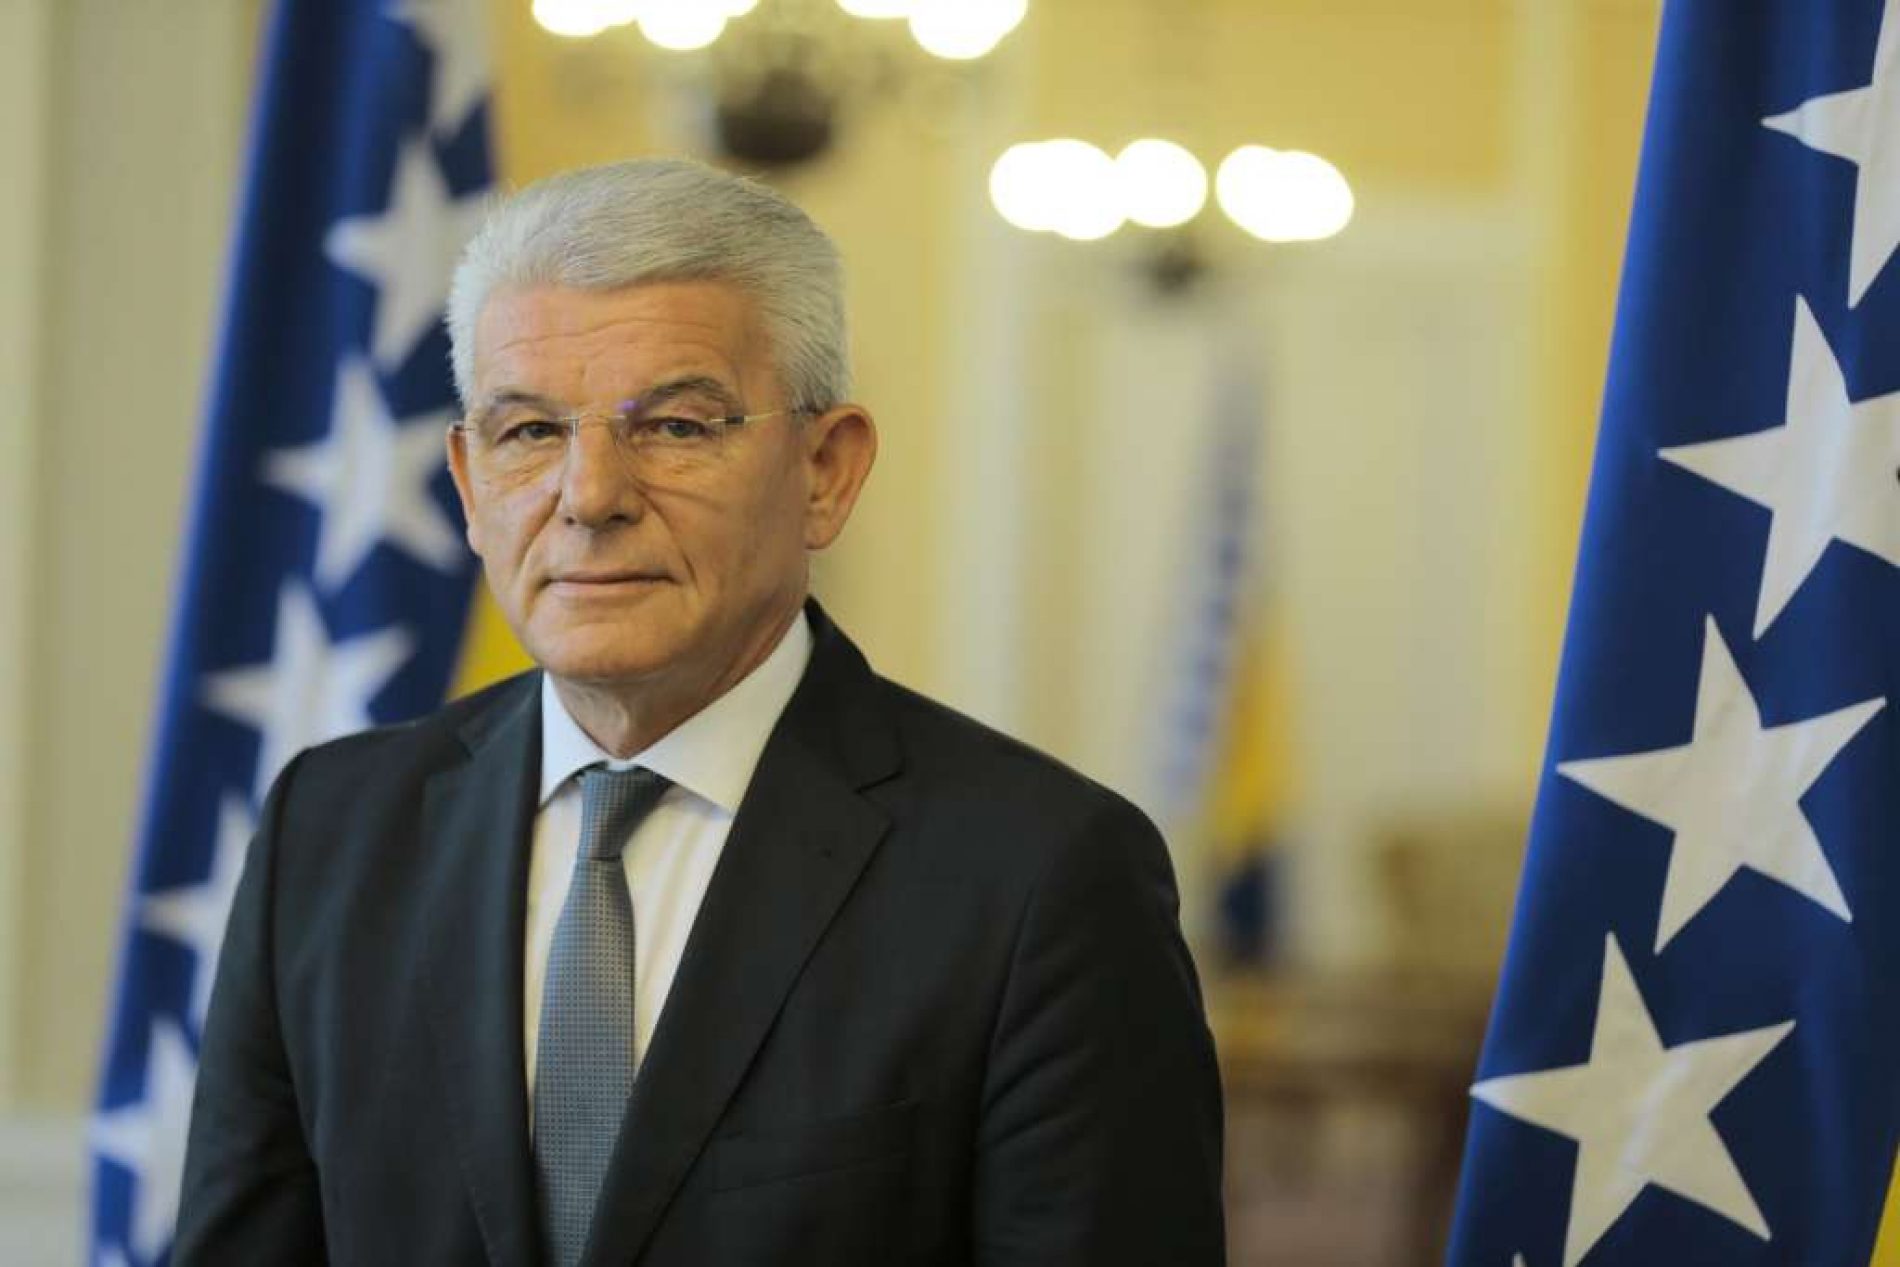 Od danas dužnost predsjedavajućeg Predsjedništva Bosne i Hercegovine preuzima Šefik Džaferović